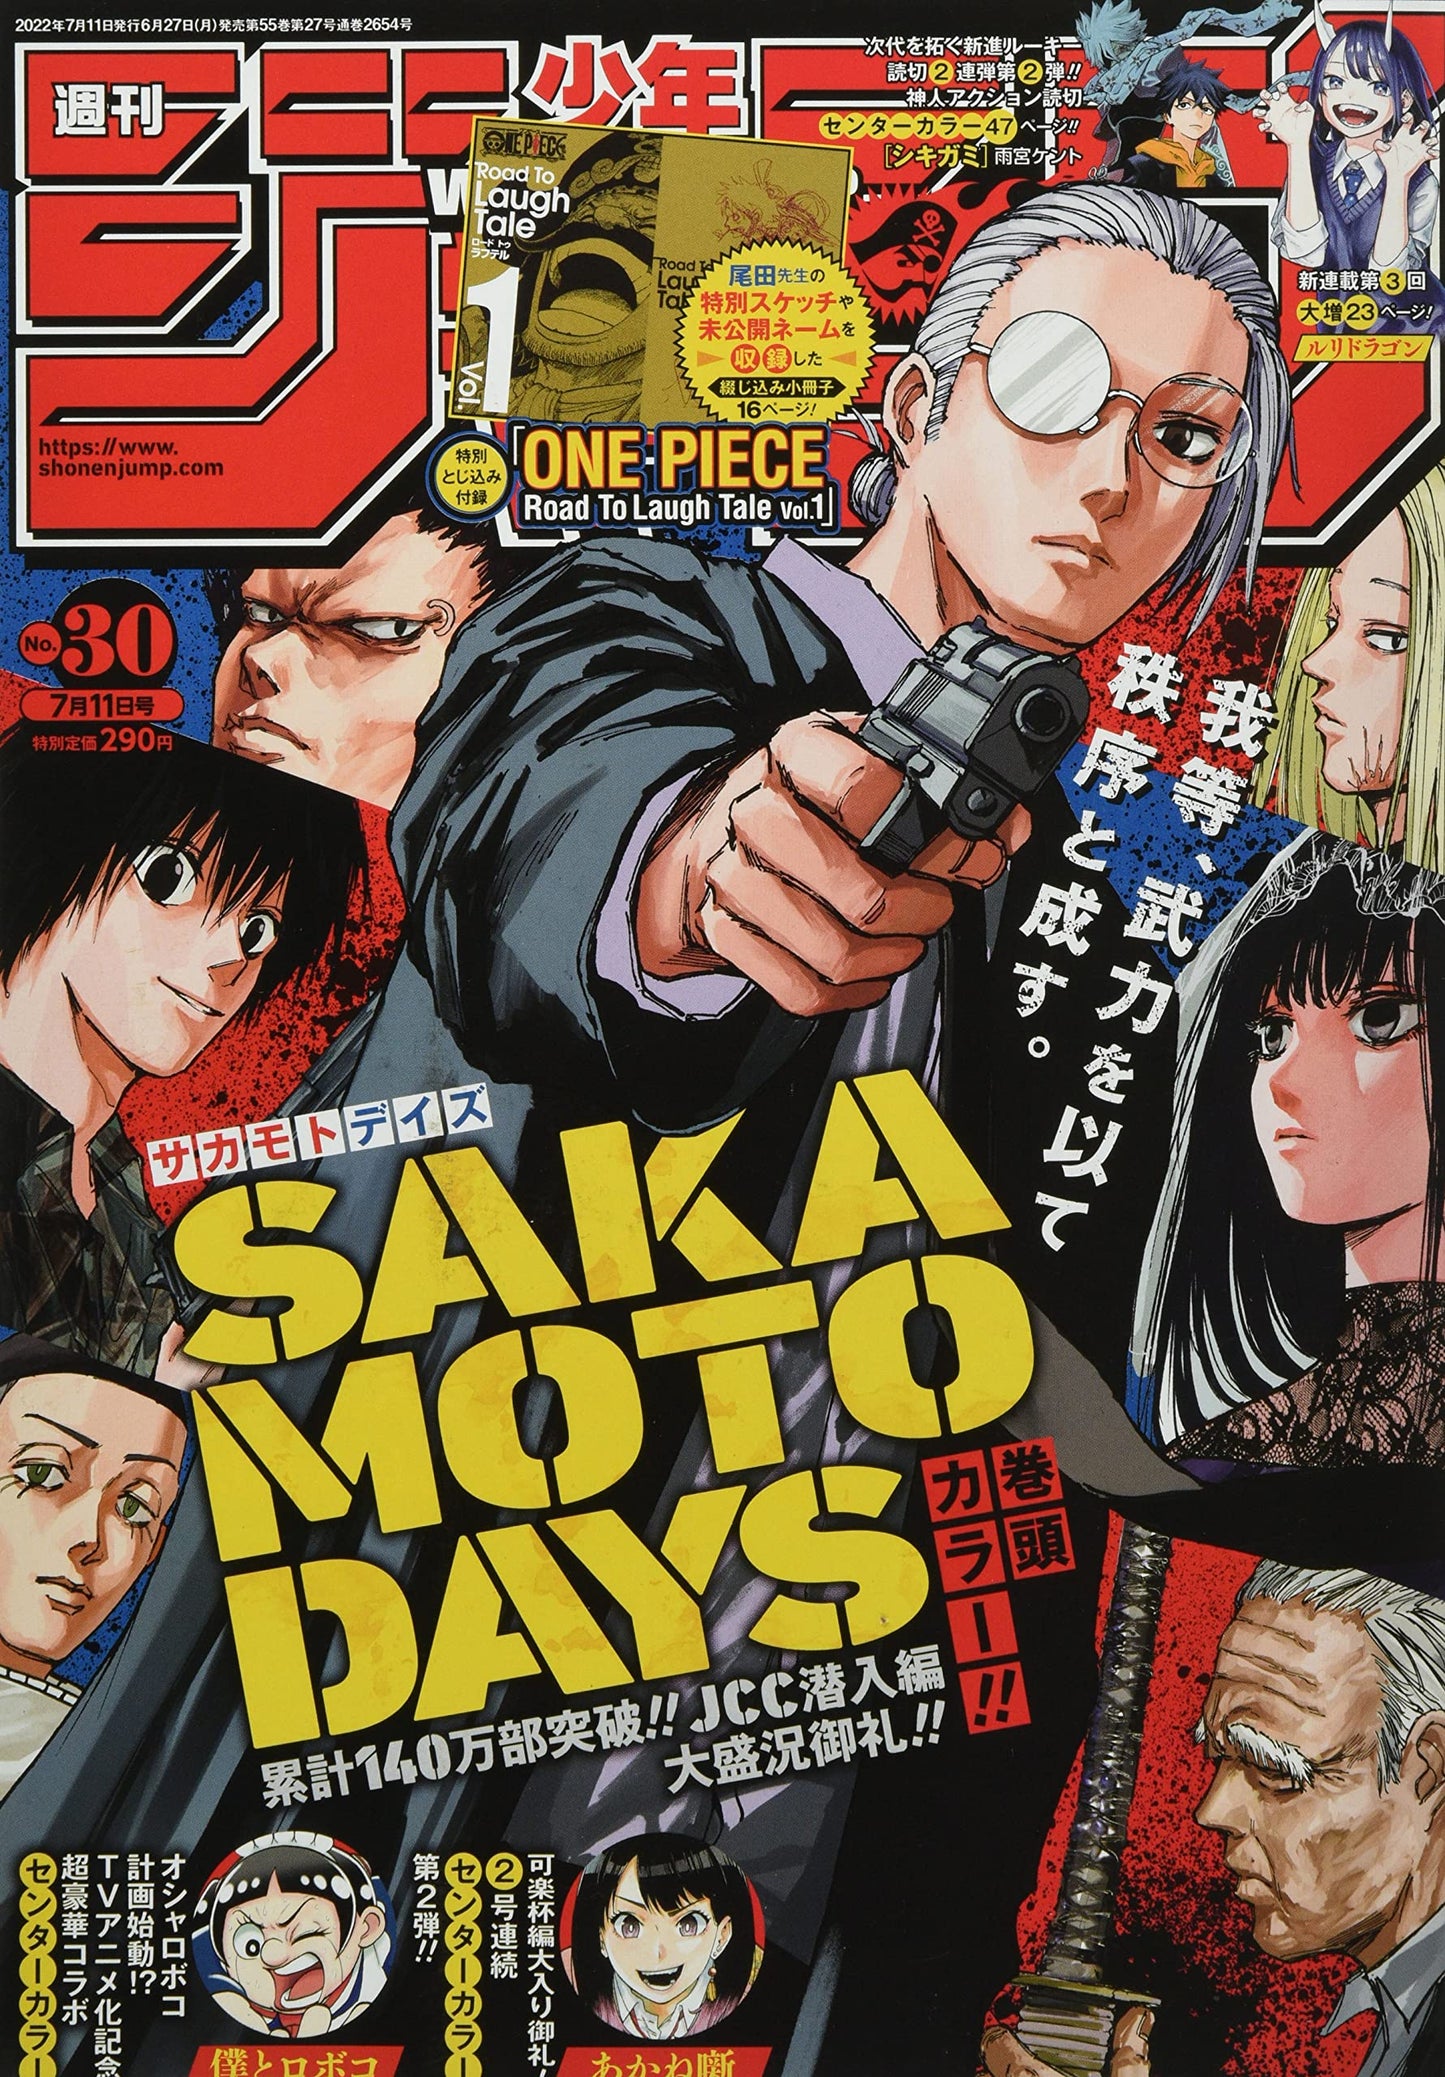 Weekly Shonen Jump - 30/2022 - Sakamoto Days + Booklet One Piece